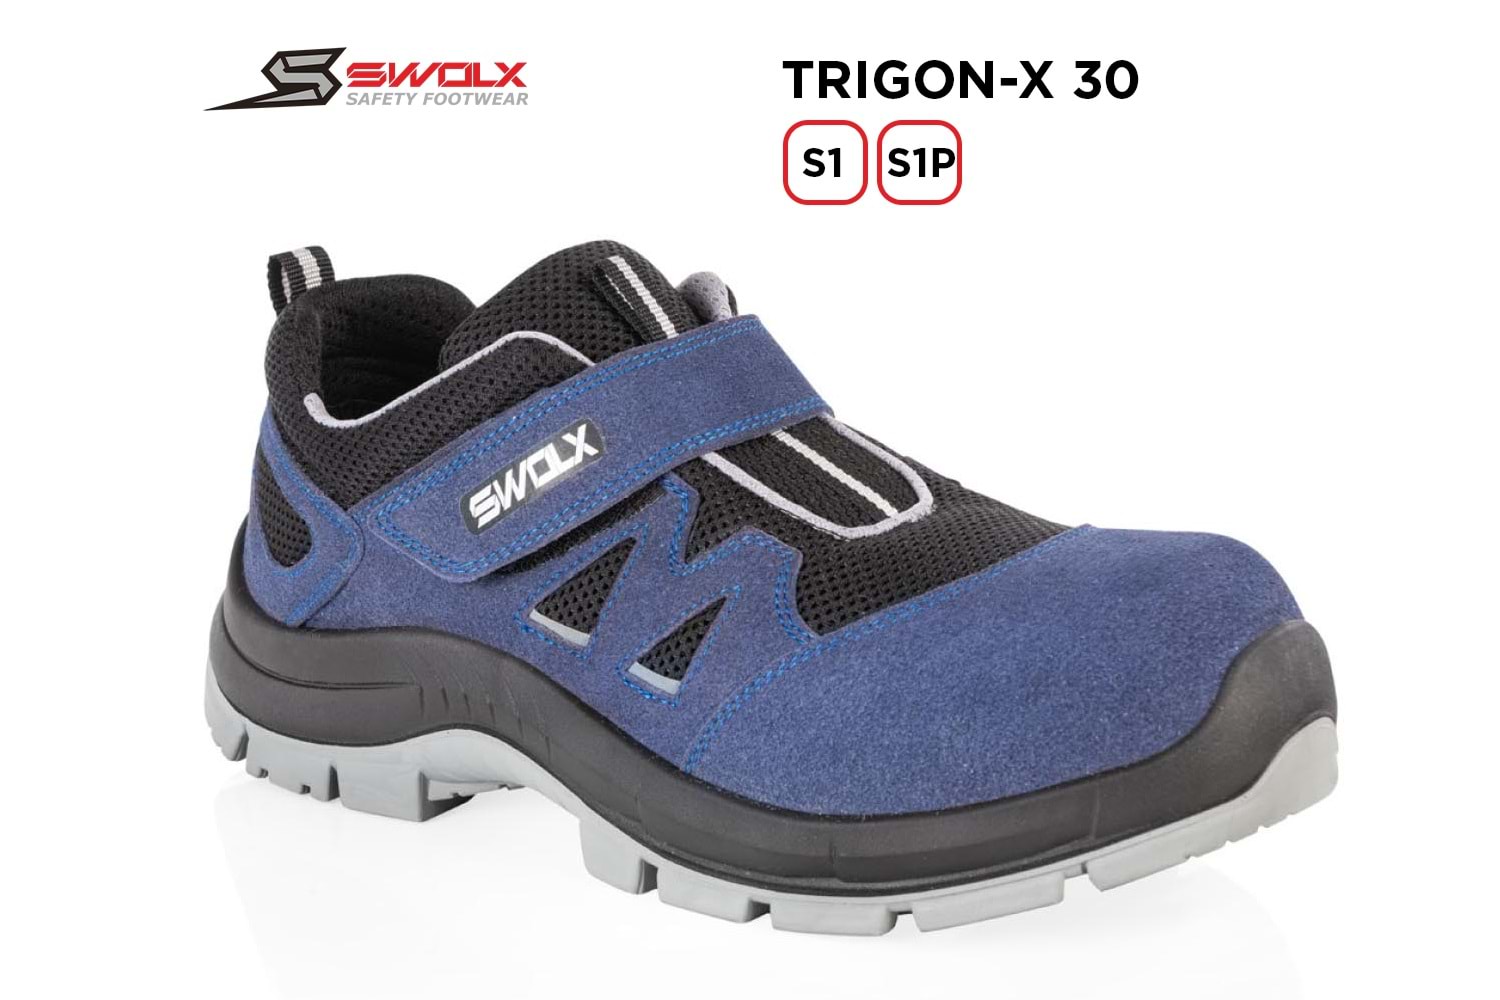 Swolx İş Ayakkabısı - Trigon-X 30 S1 - 45